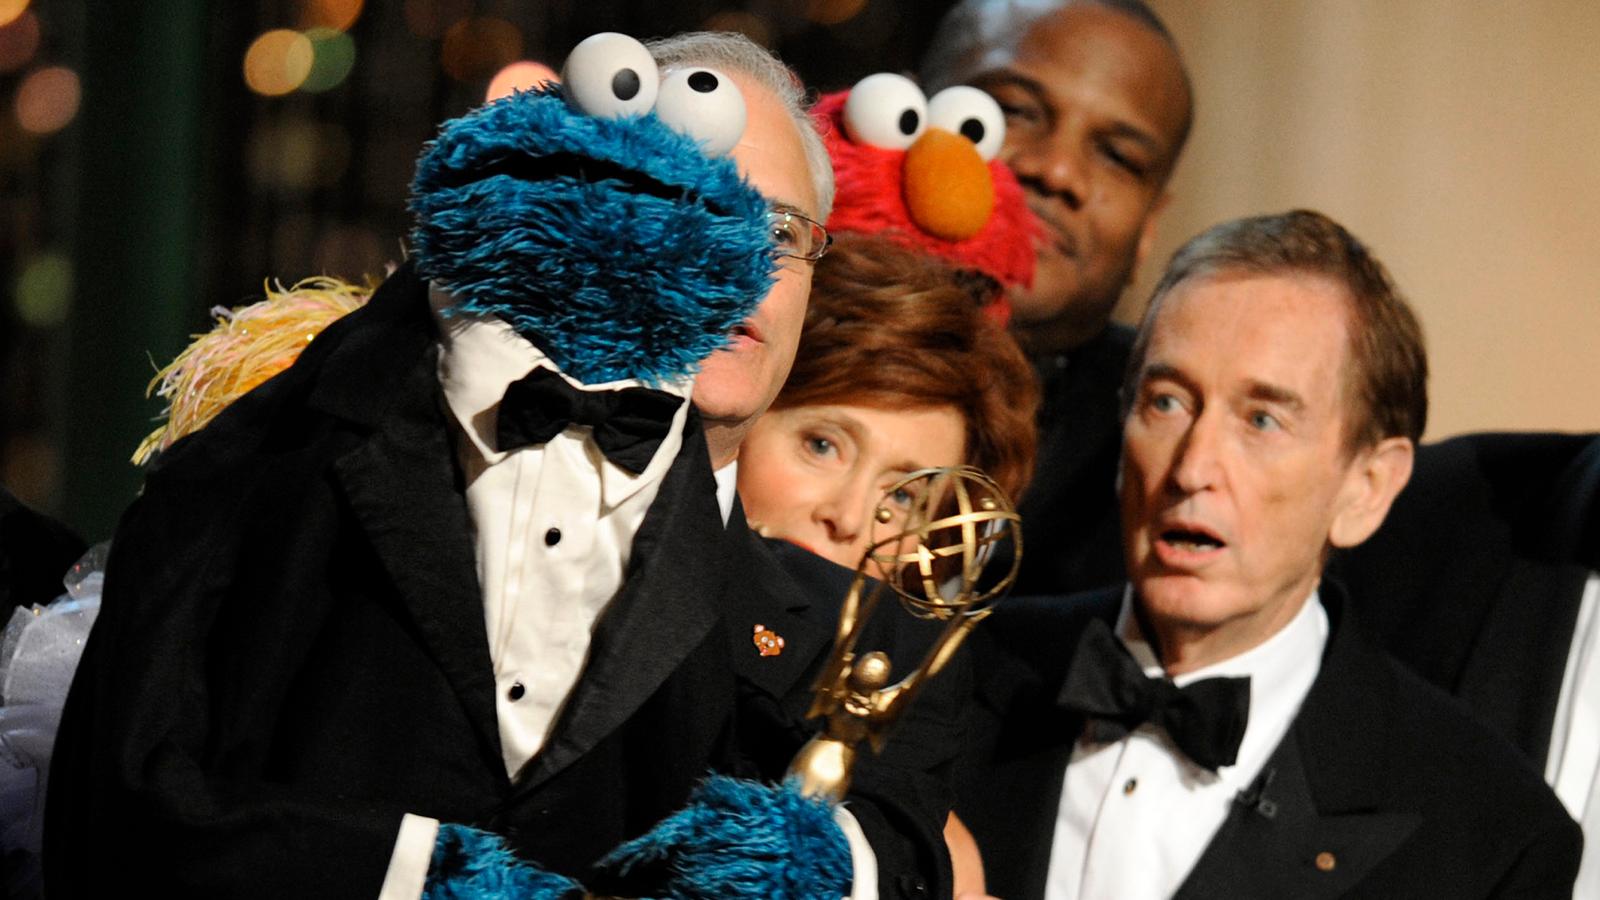 Bob McGrath tilldelades en Emmy 2009 för lång och trogen tjänst i ”Sesame Street”.